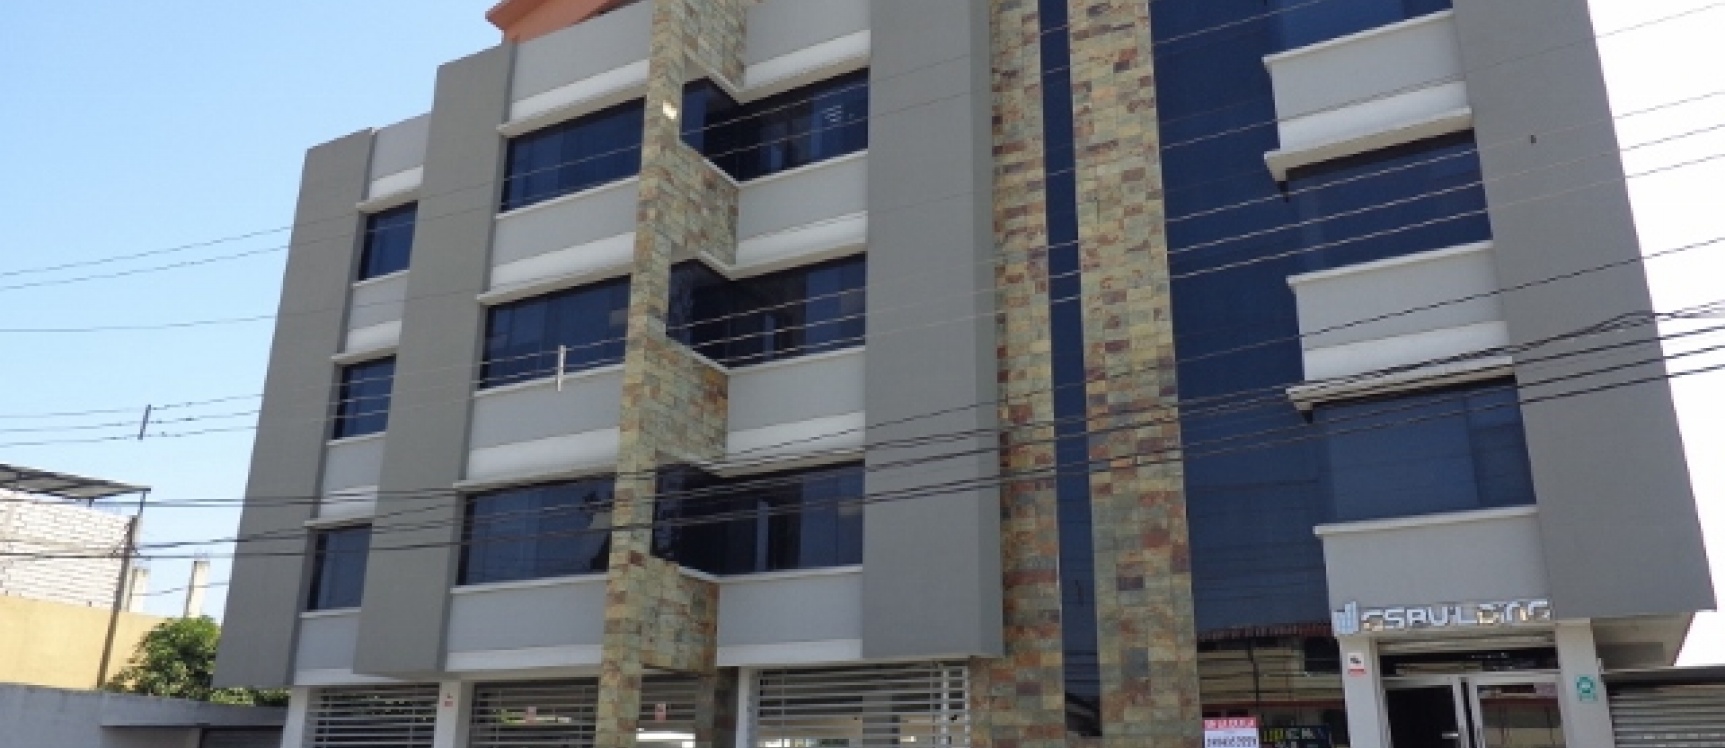 GeoBienes - Oficina en Alquiler en El Norte de Guayaquil, Sector Garzota - Plusvalia Guayaquil Casas de venta y alquiler Inmobiliaria Ecuador